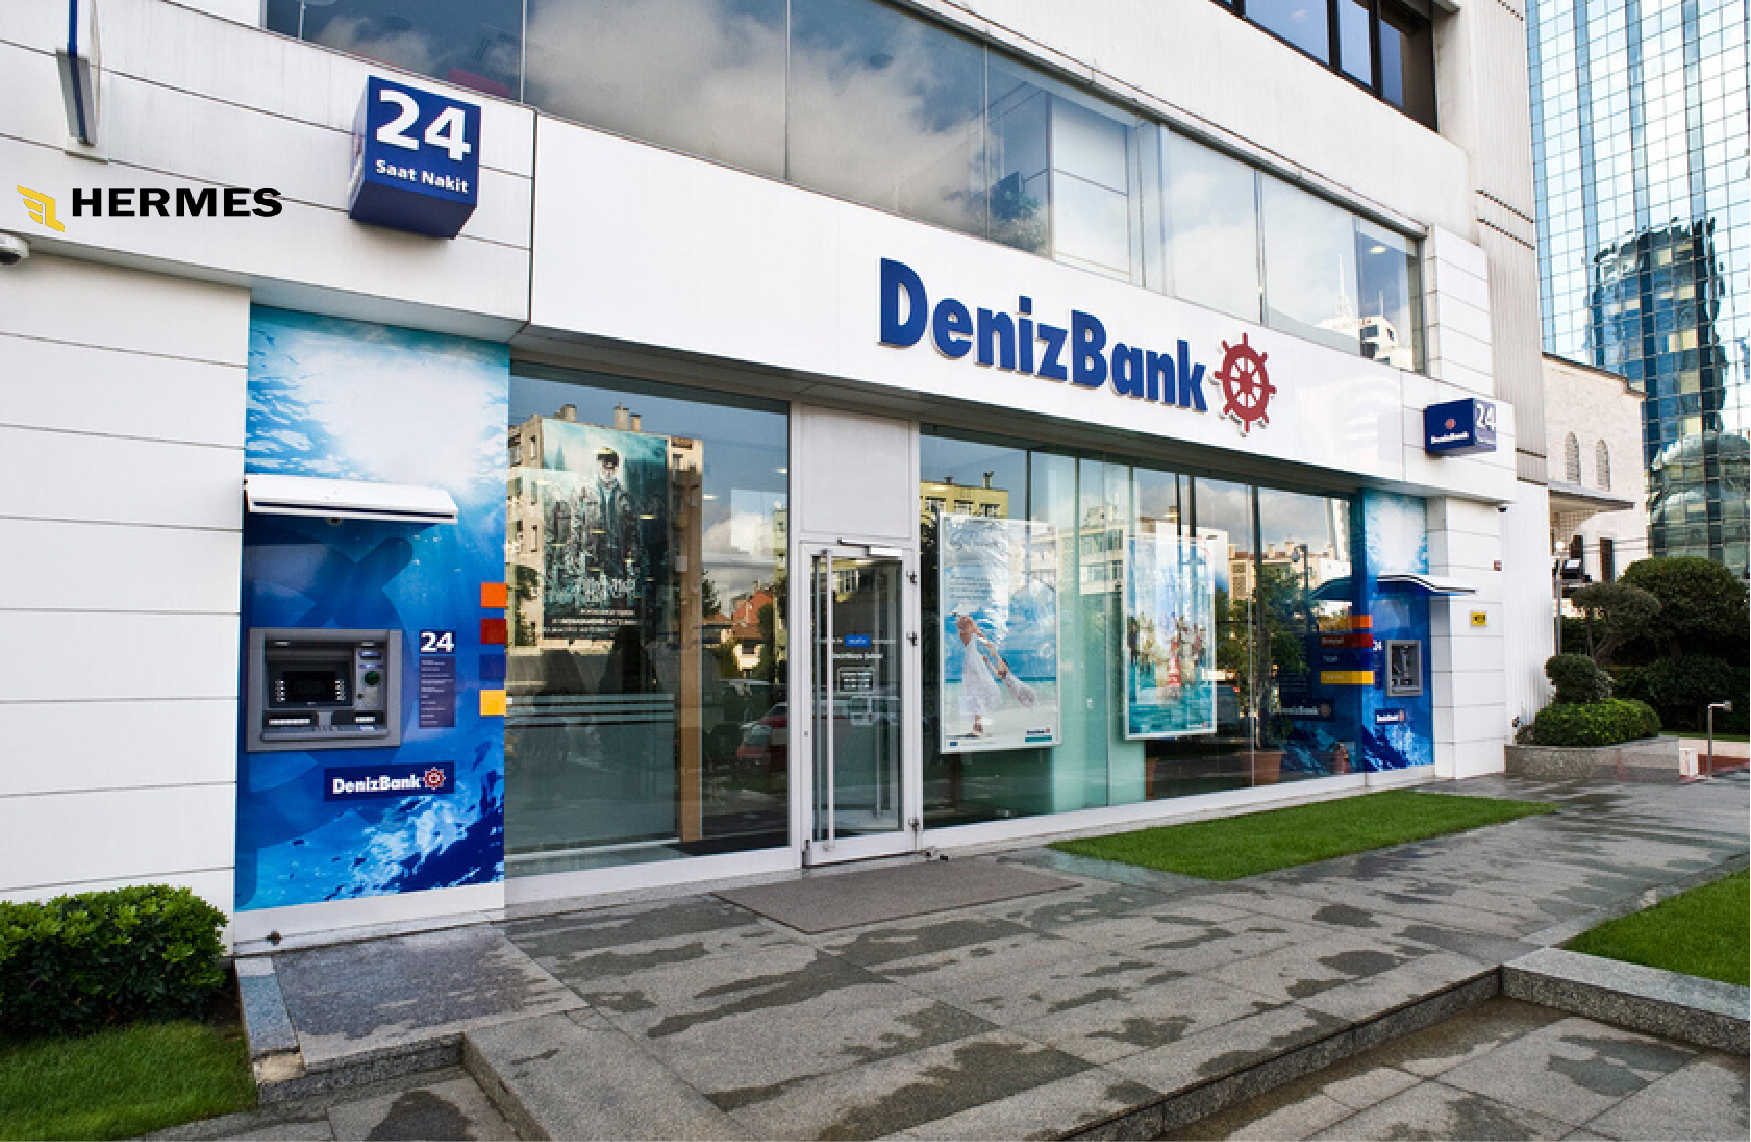 دنیزبانک (Denizbank)